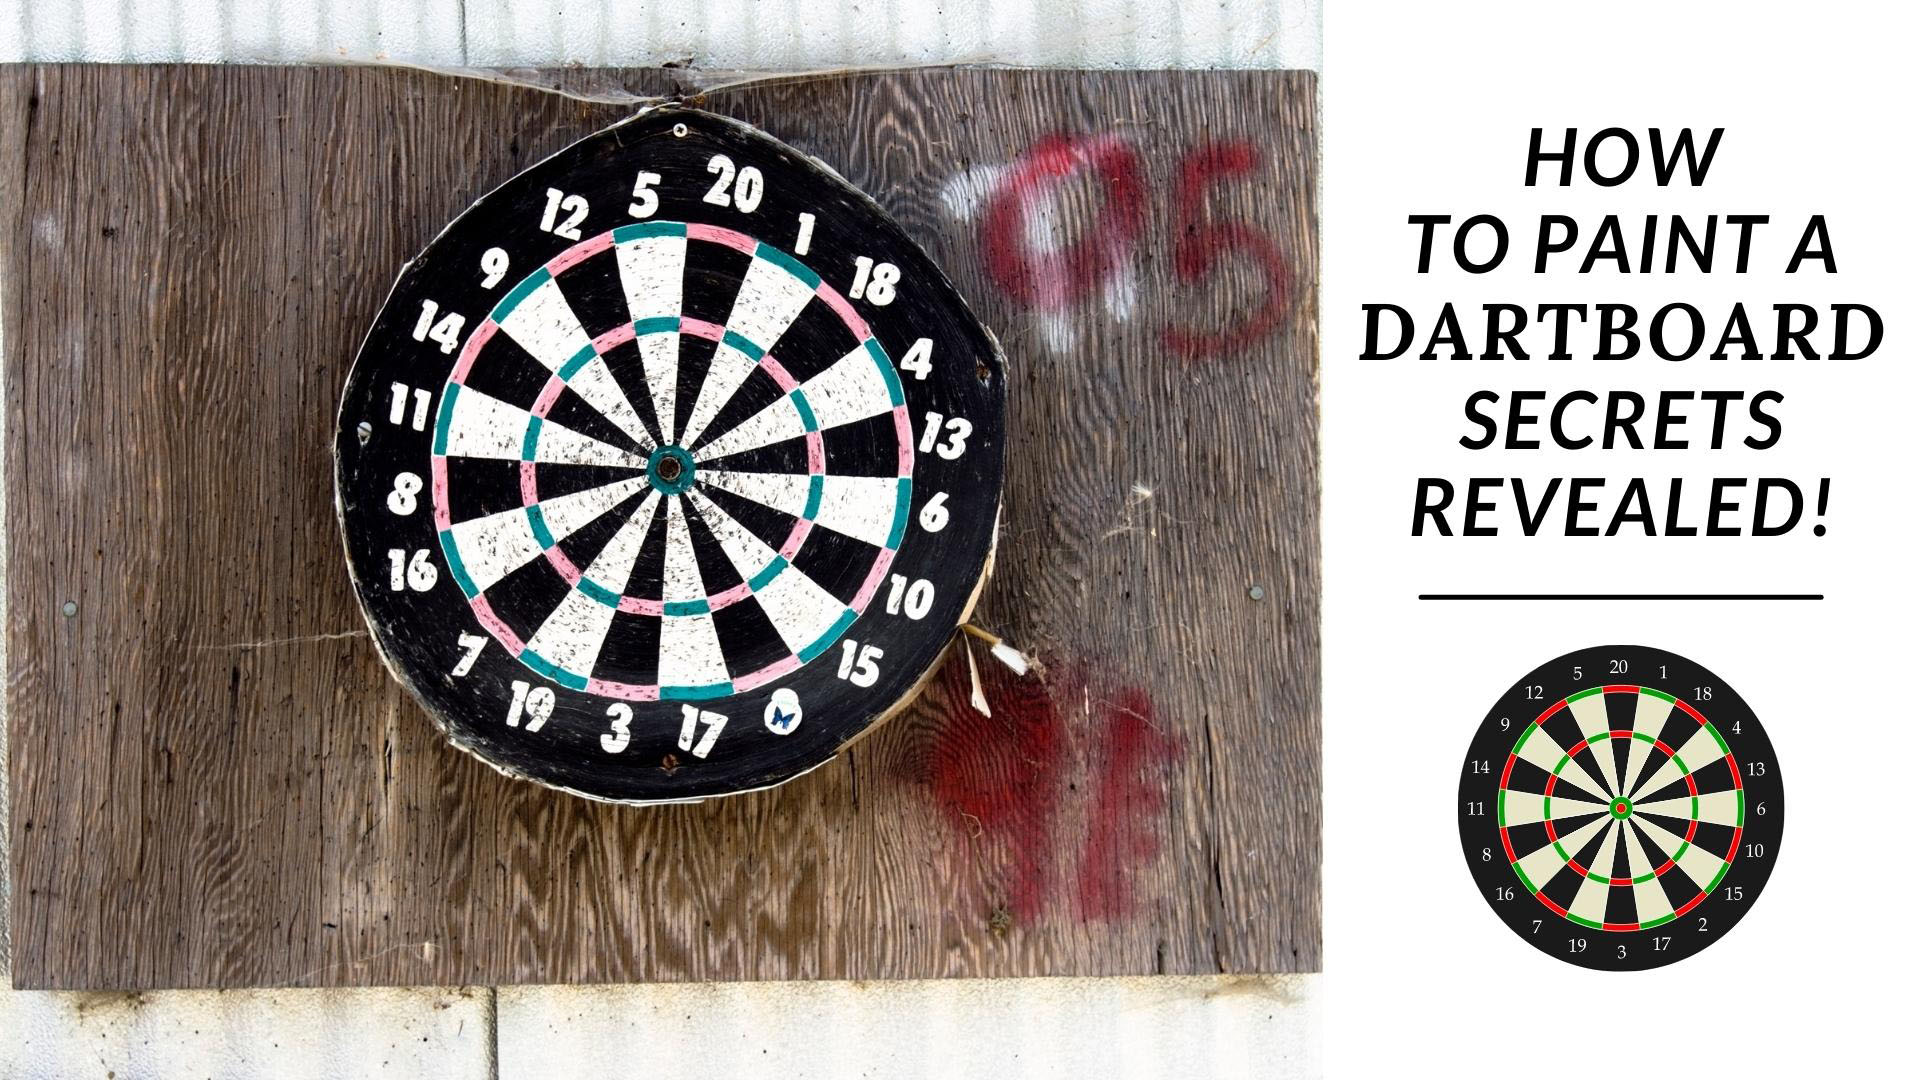 How To Paint A Dartboard Secrets Revealed!